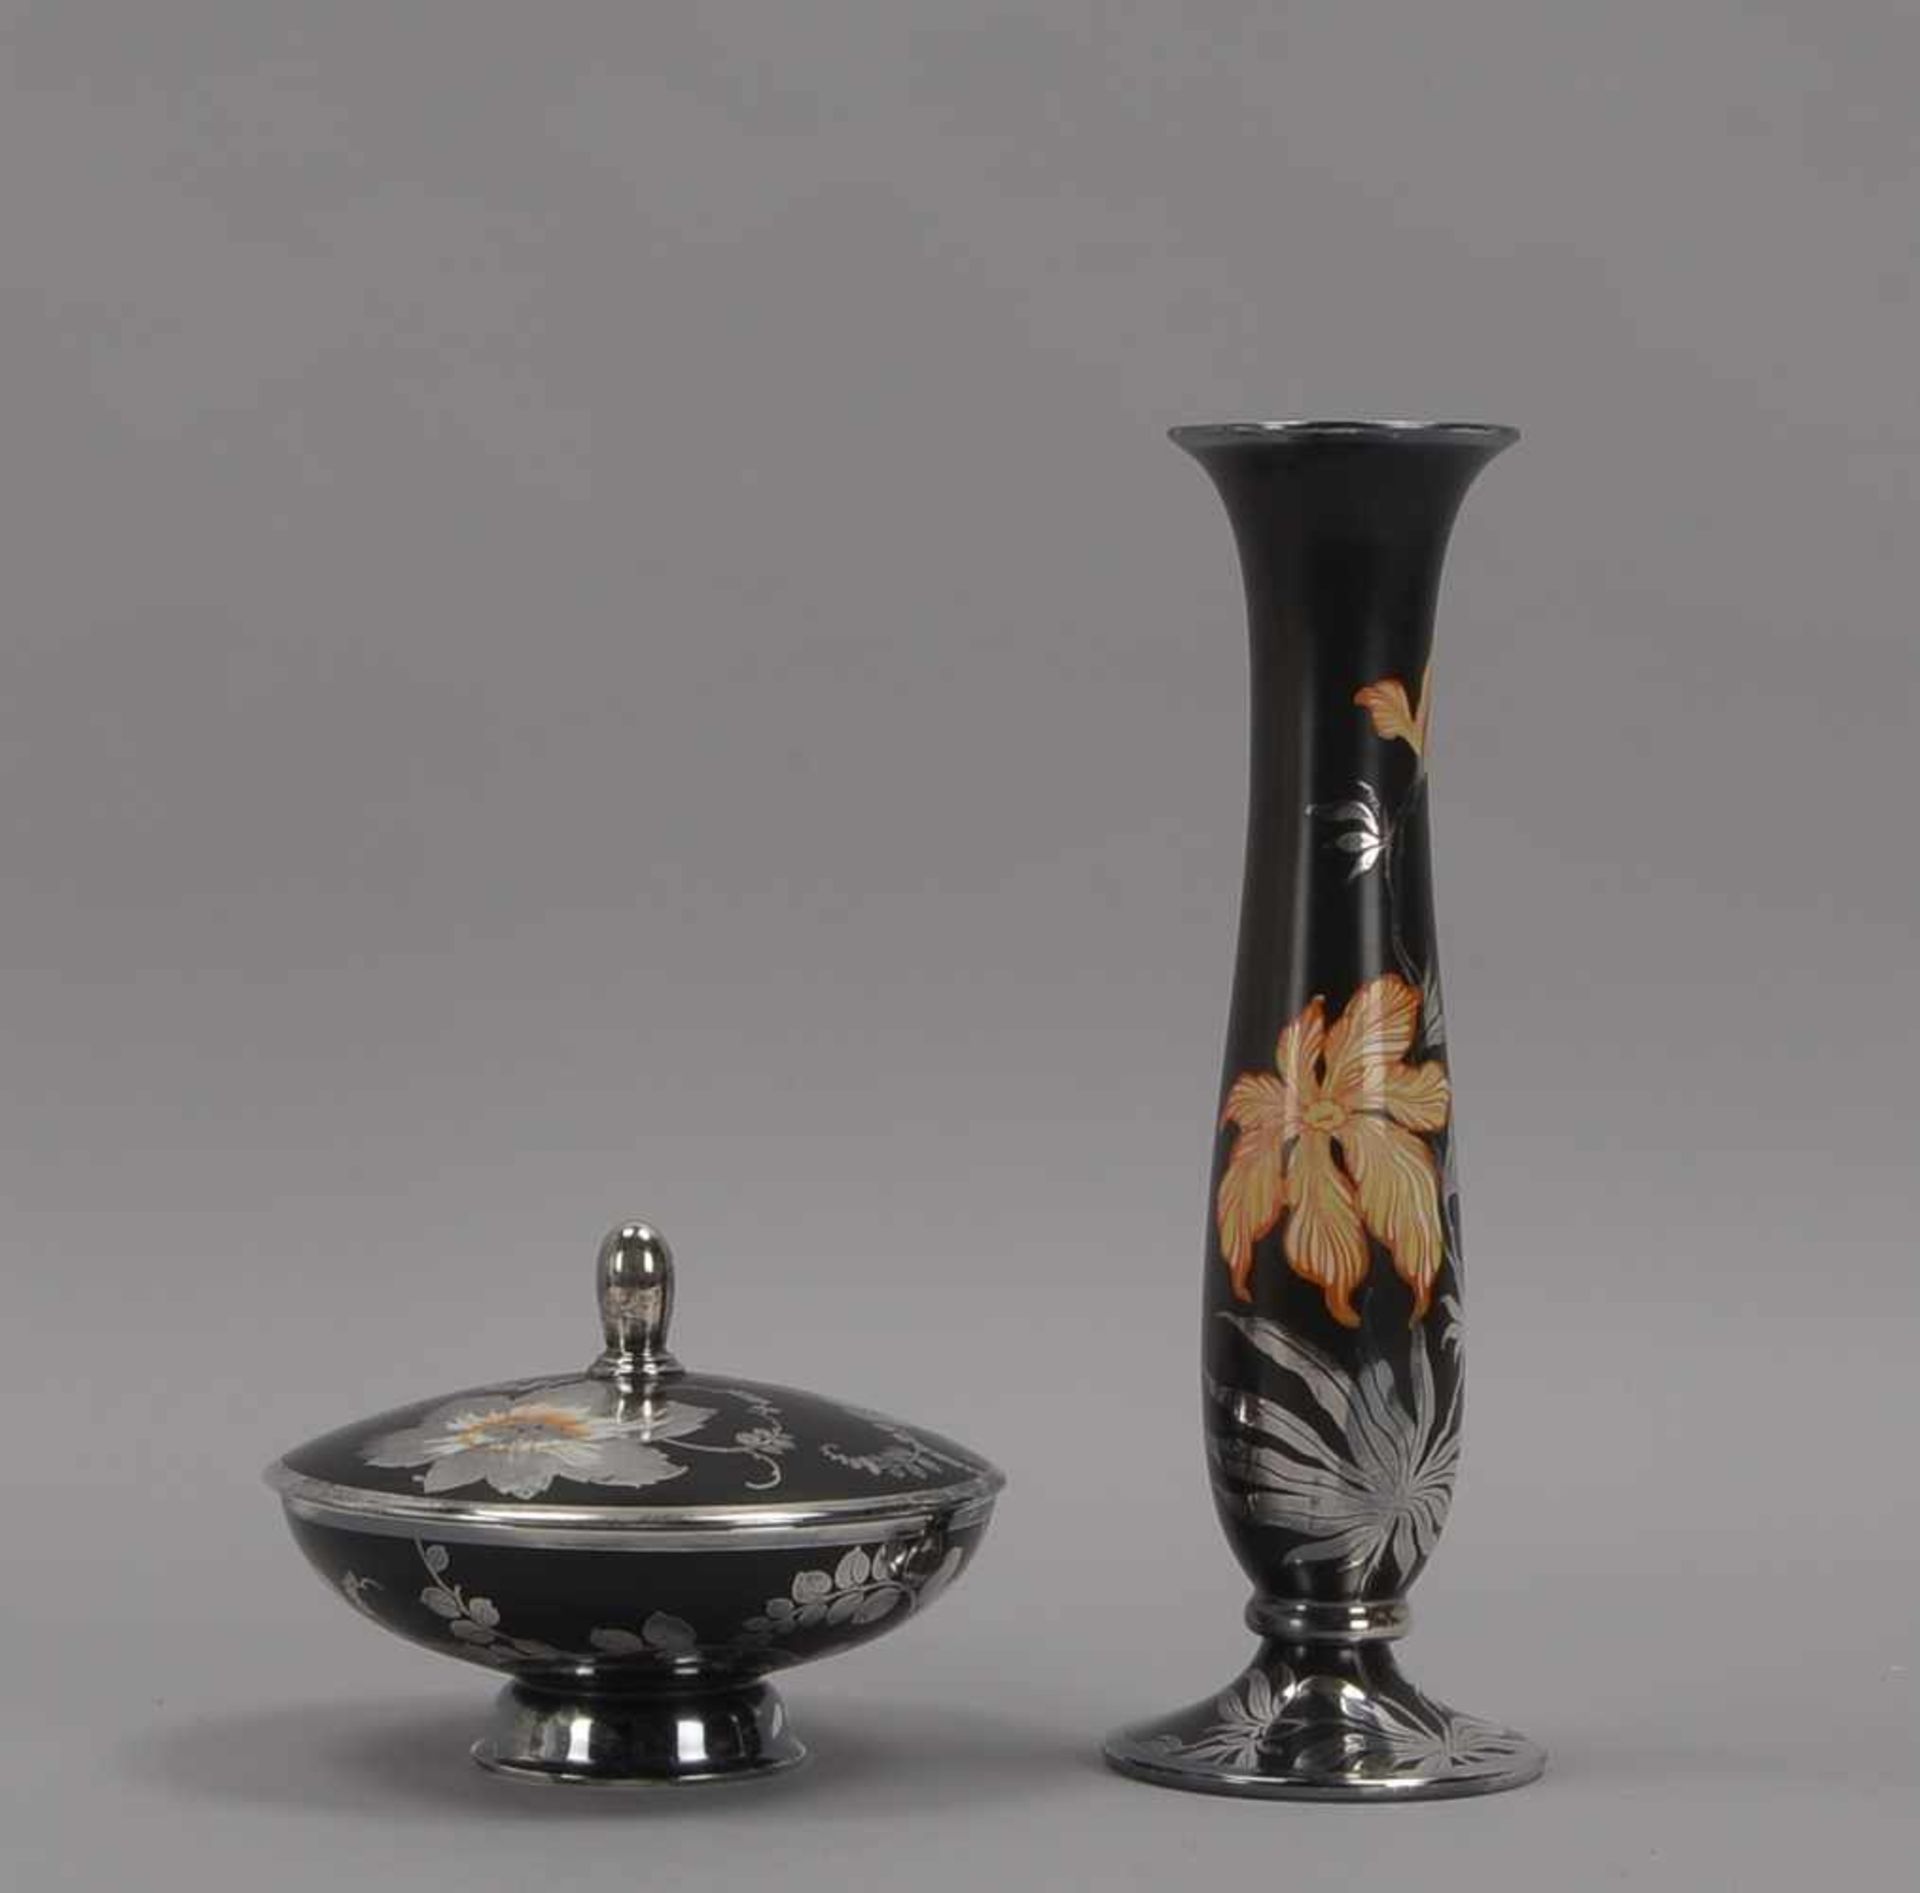 Rosenthal, Vase und Bonbonnière, Porzellan mit Silver Overlay, schwarzer Fond mit polychromer